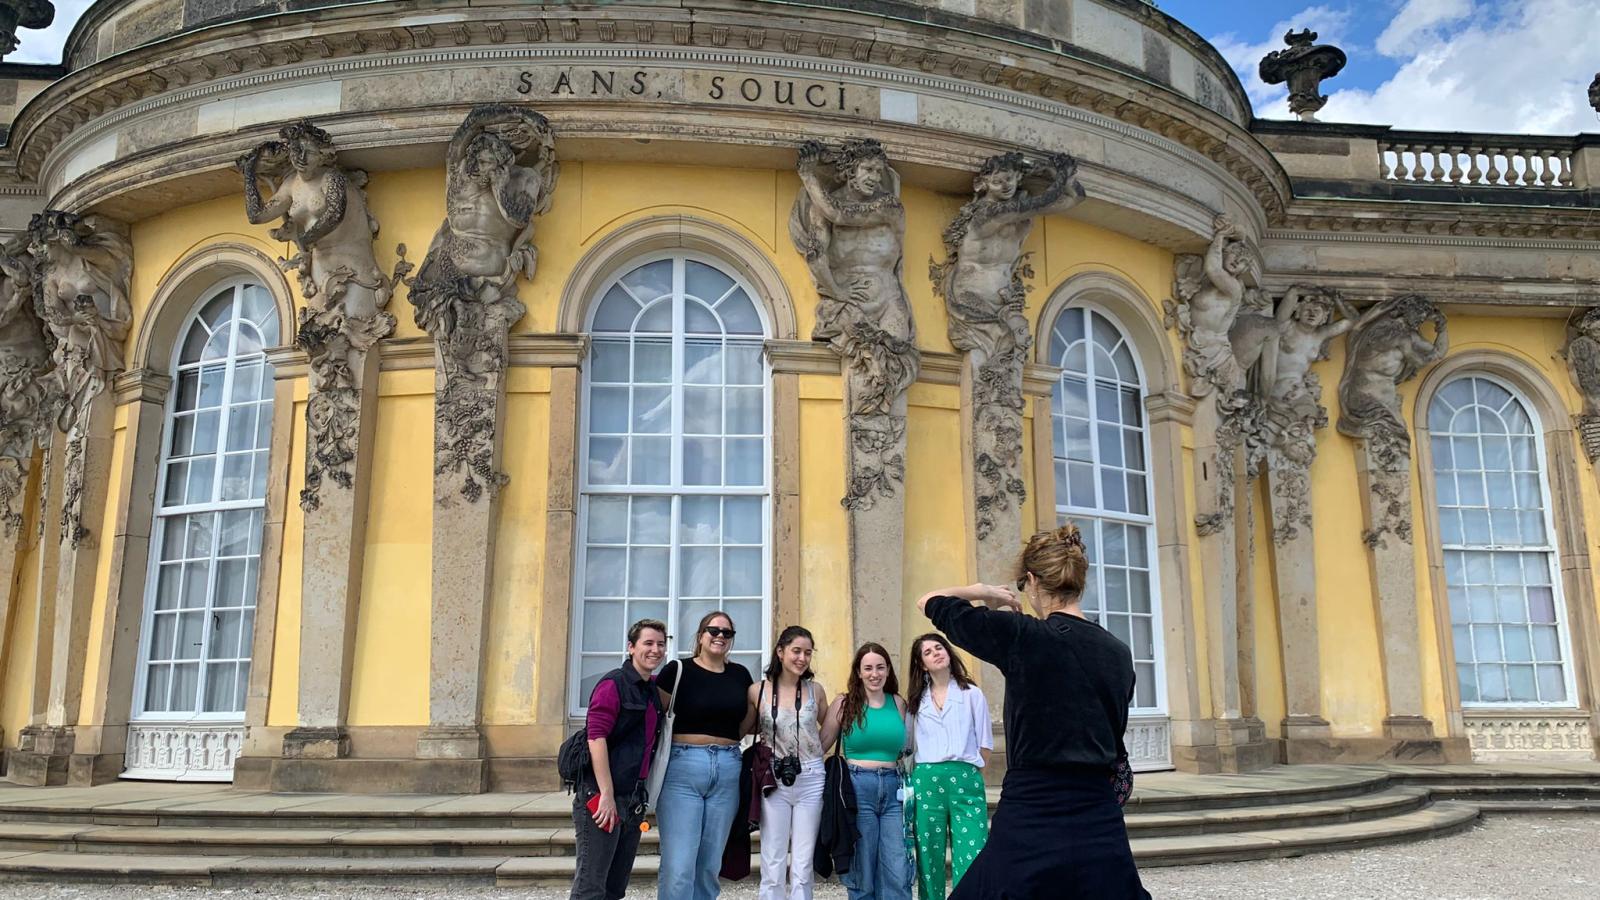 Gruppenfoto vor dem Schloss Sanssouci